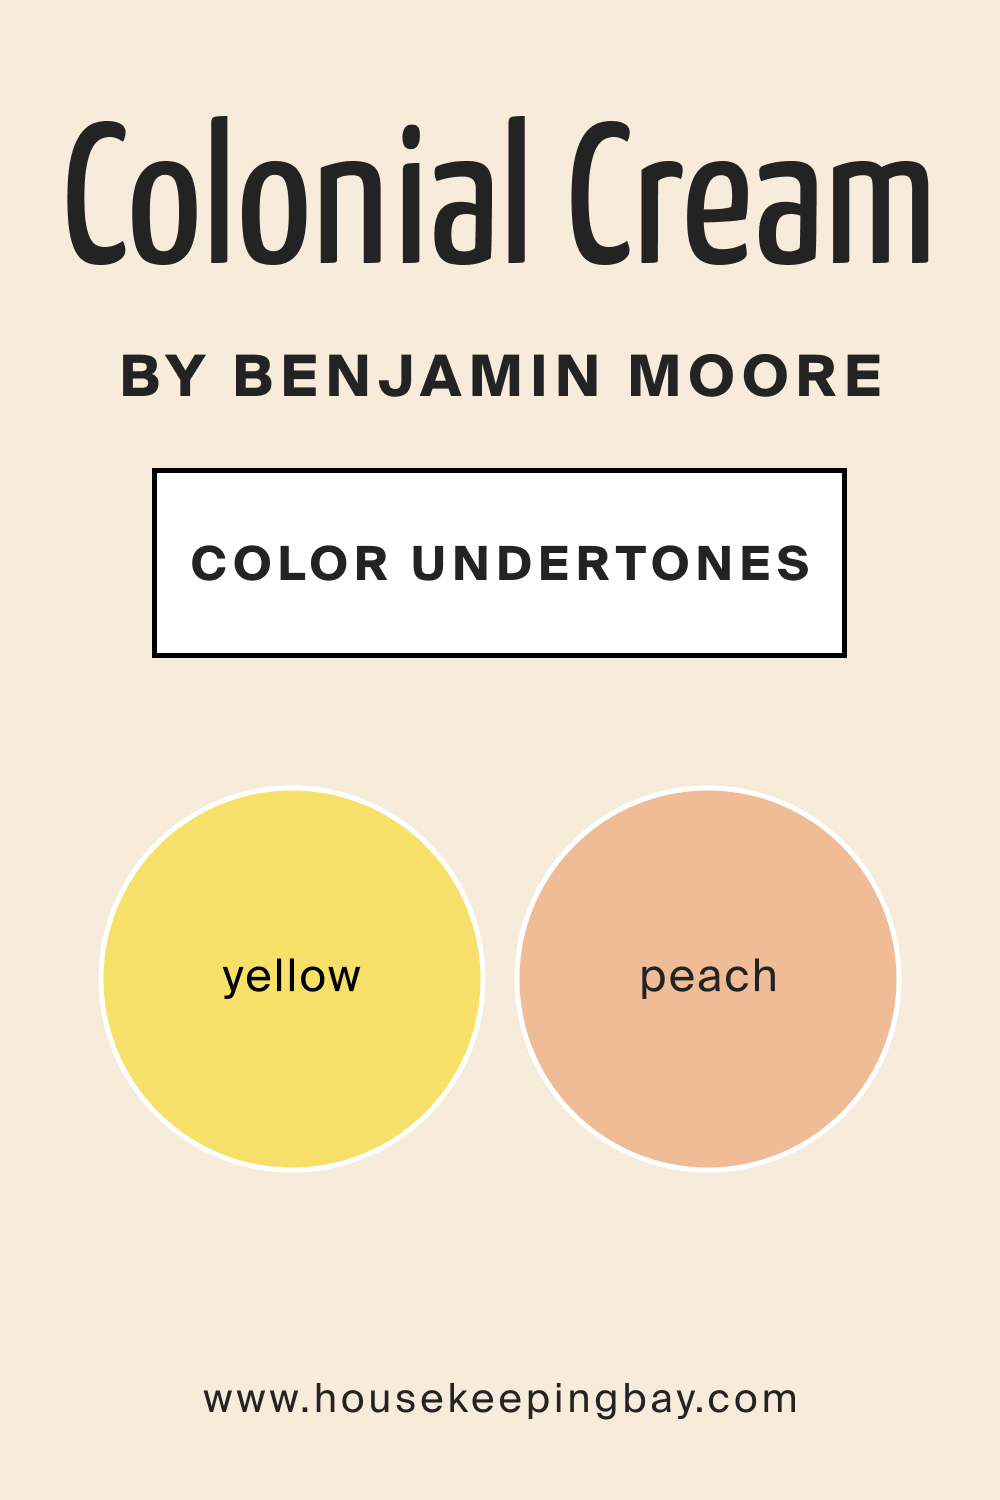 Colonial Cream OC 77 by Benjamin Moore Undertones